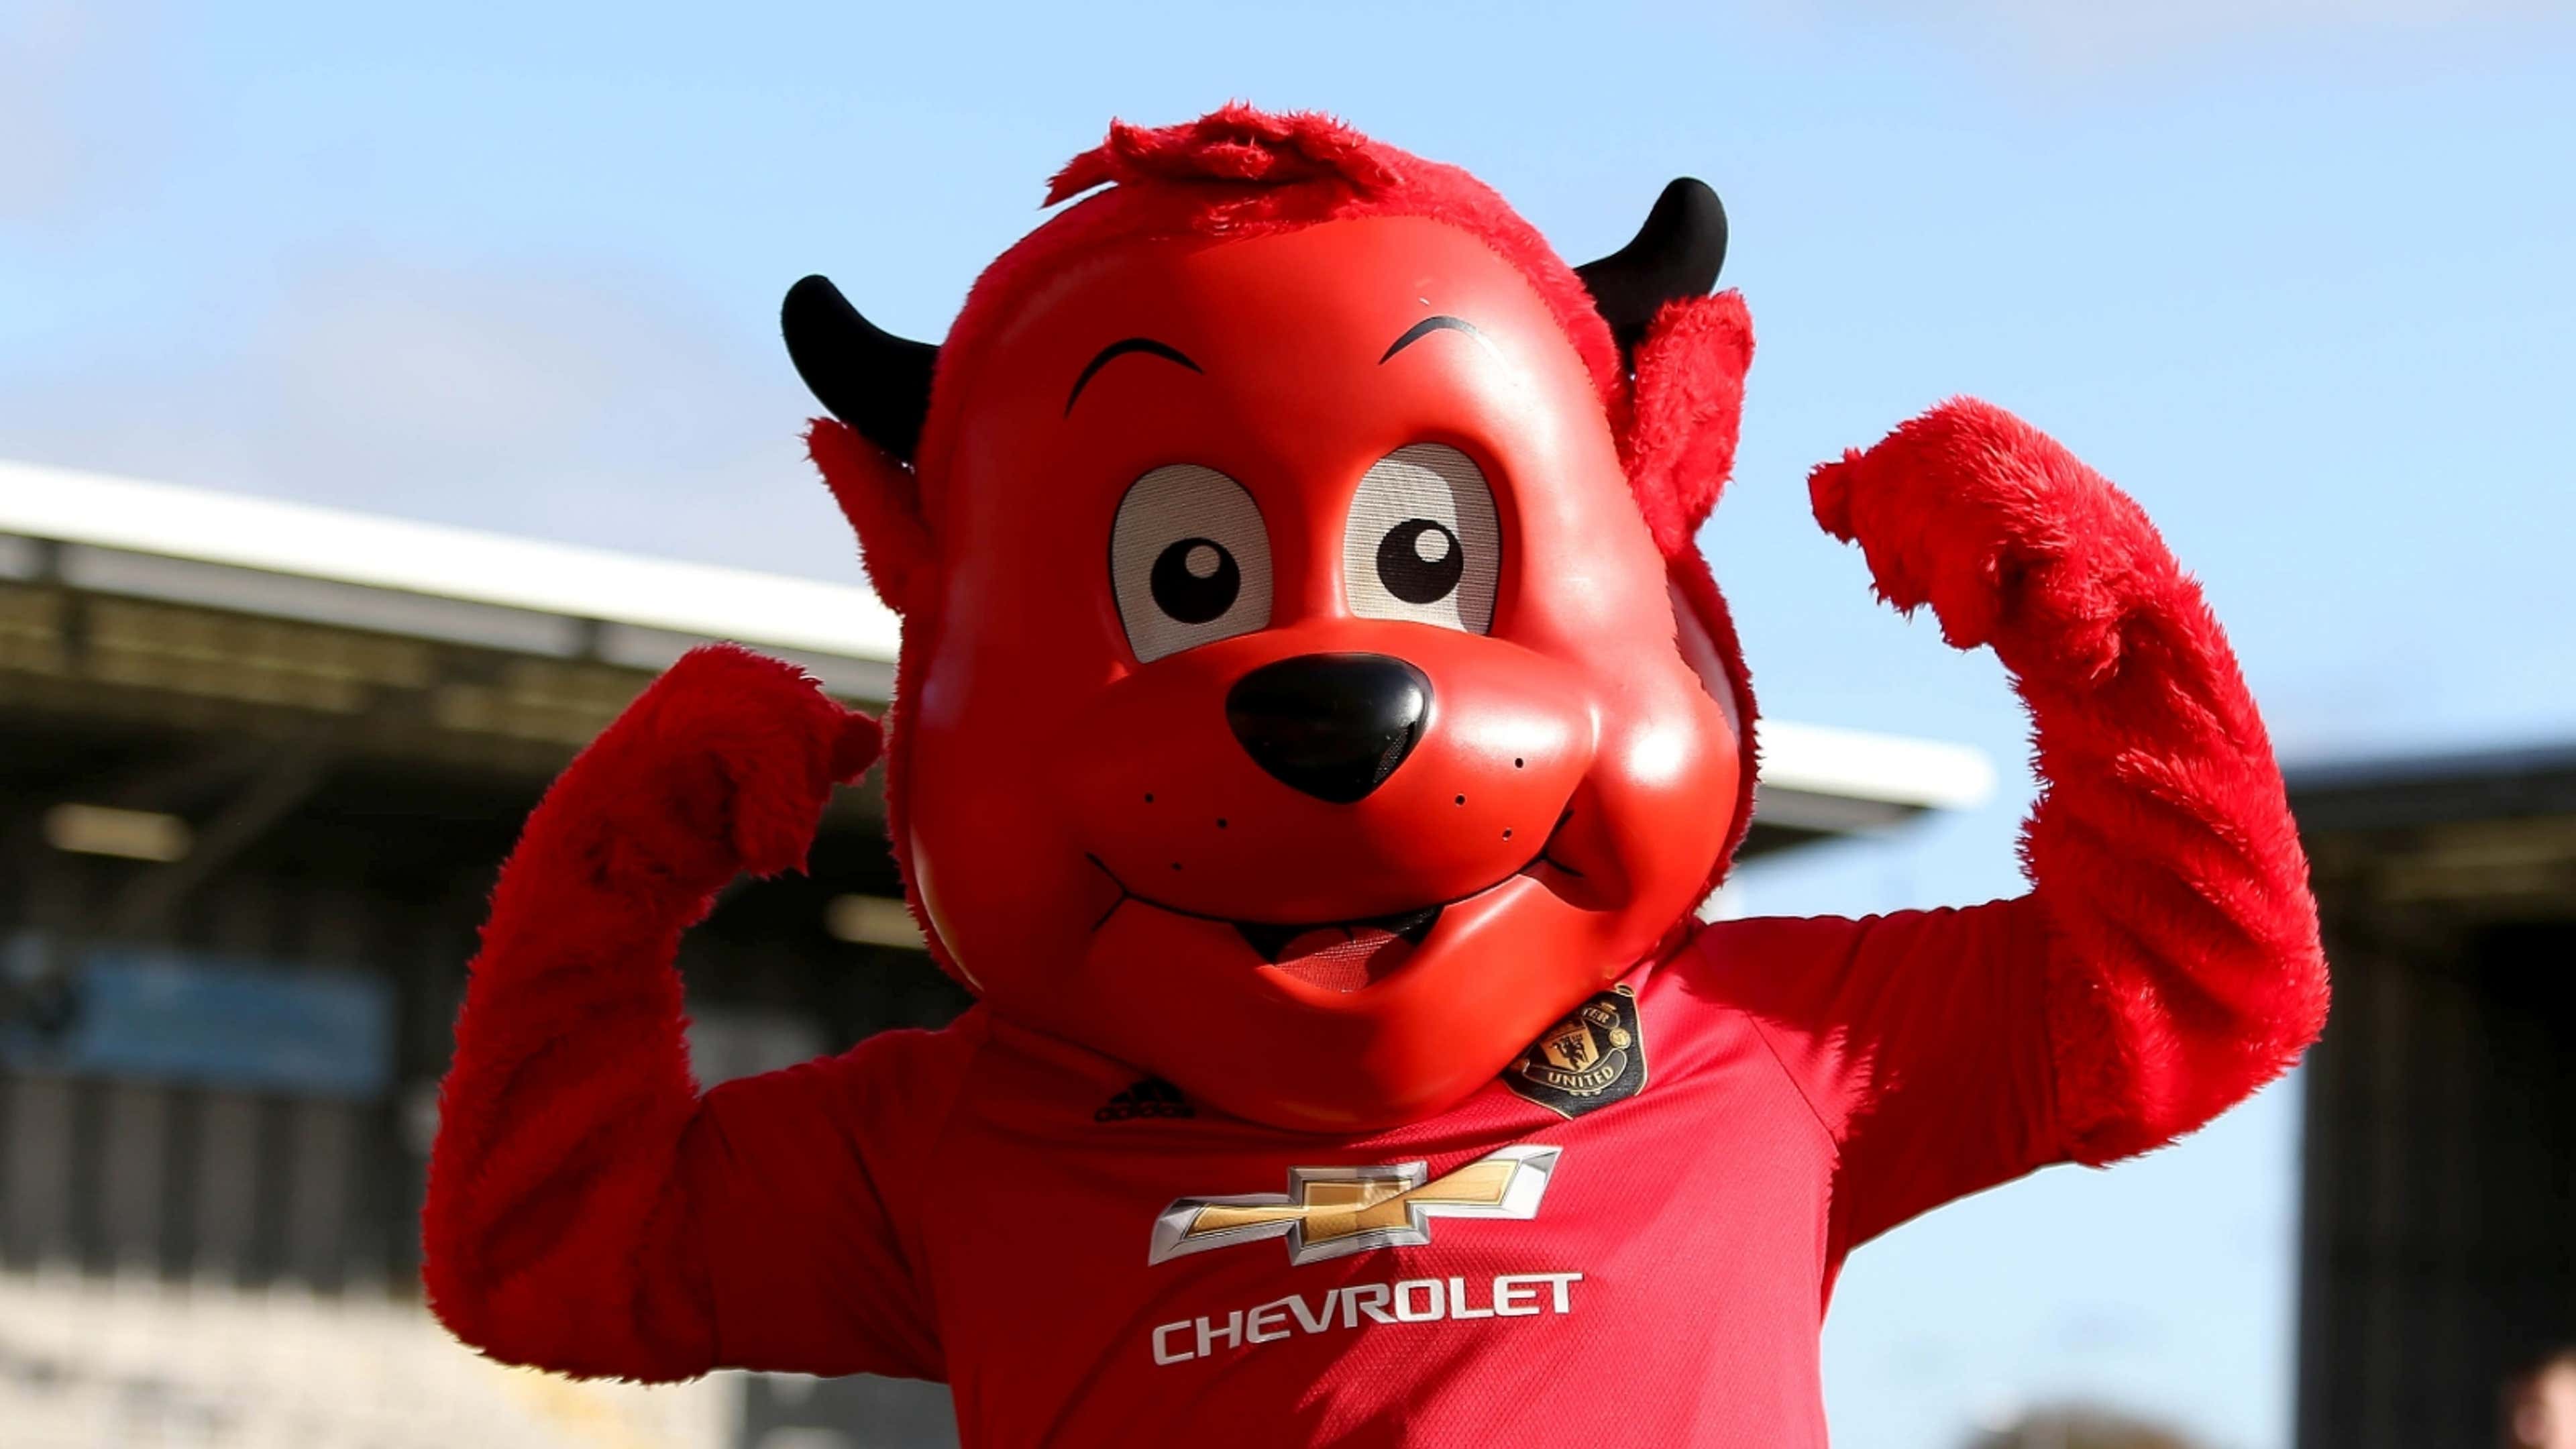 Manchester United mascot